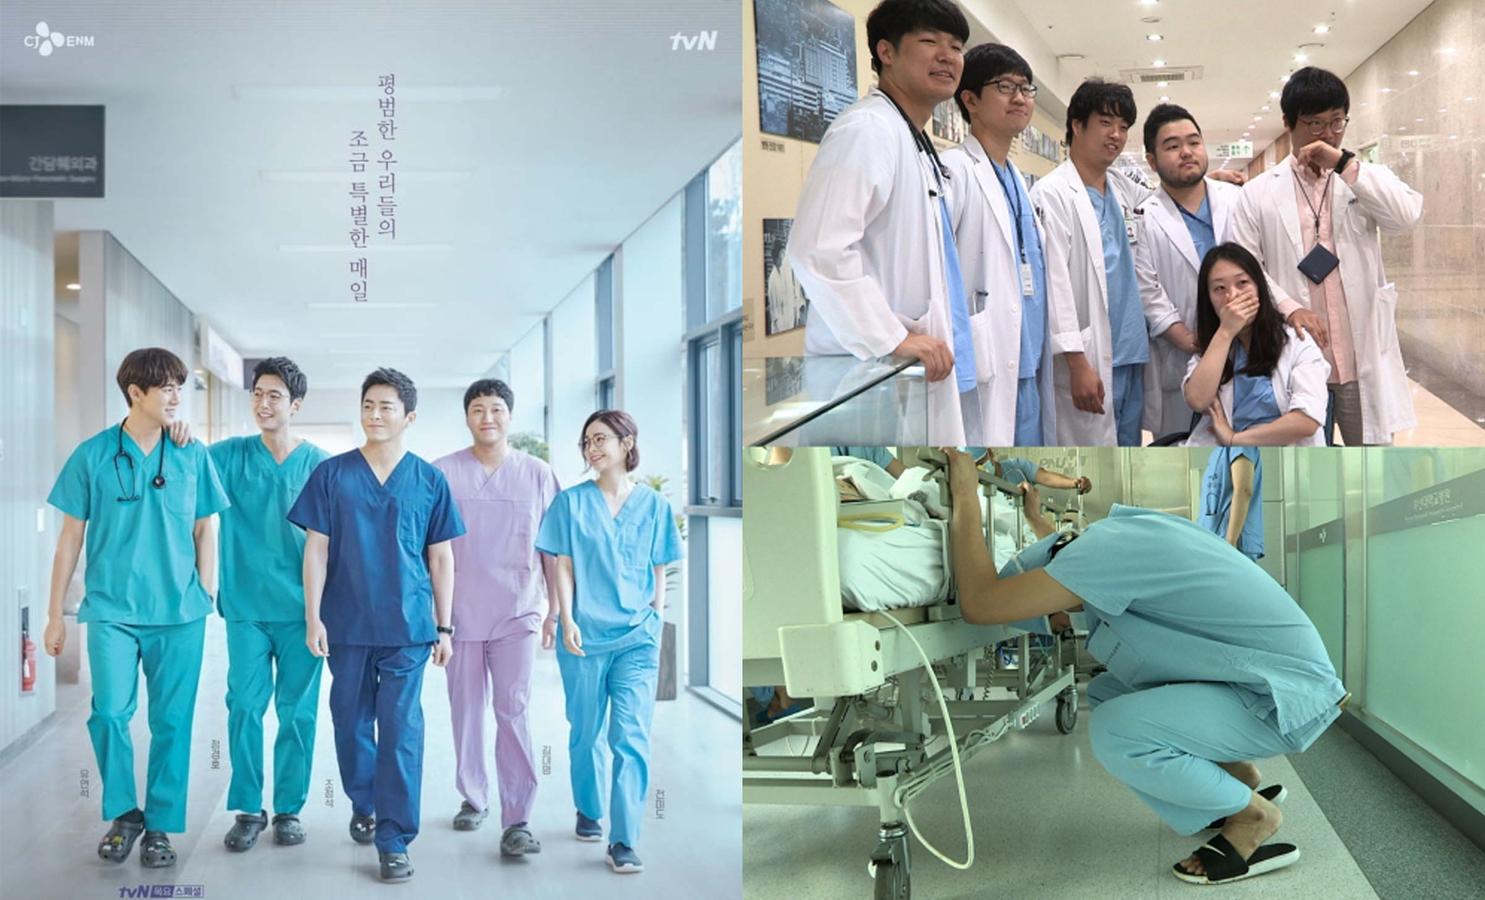 Nursing provides rare experience to Korean nursing students, News